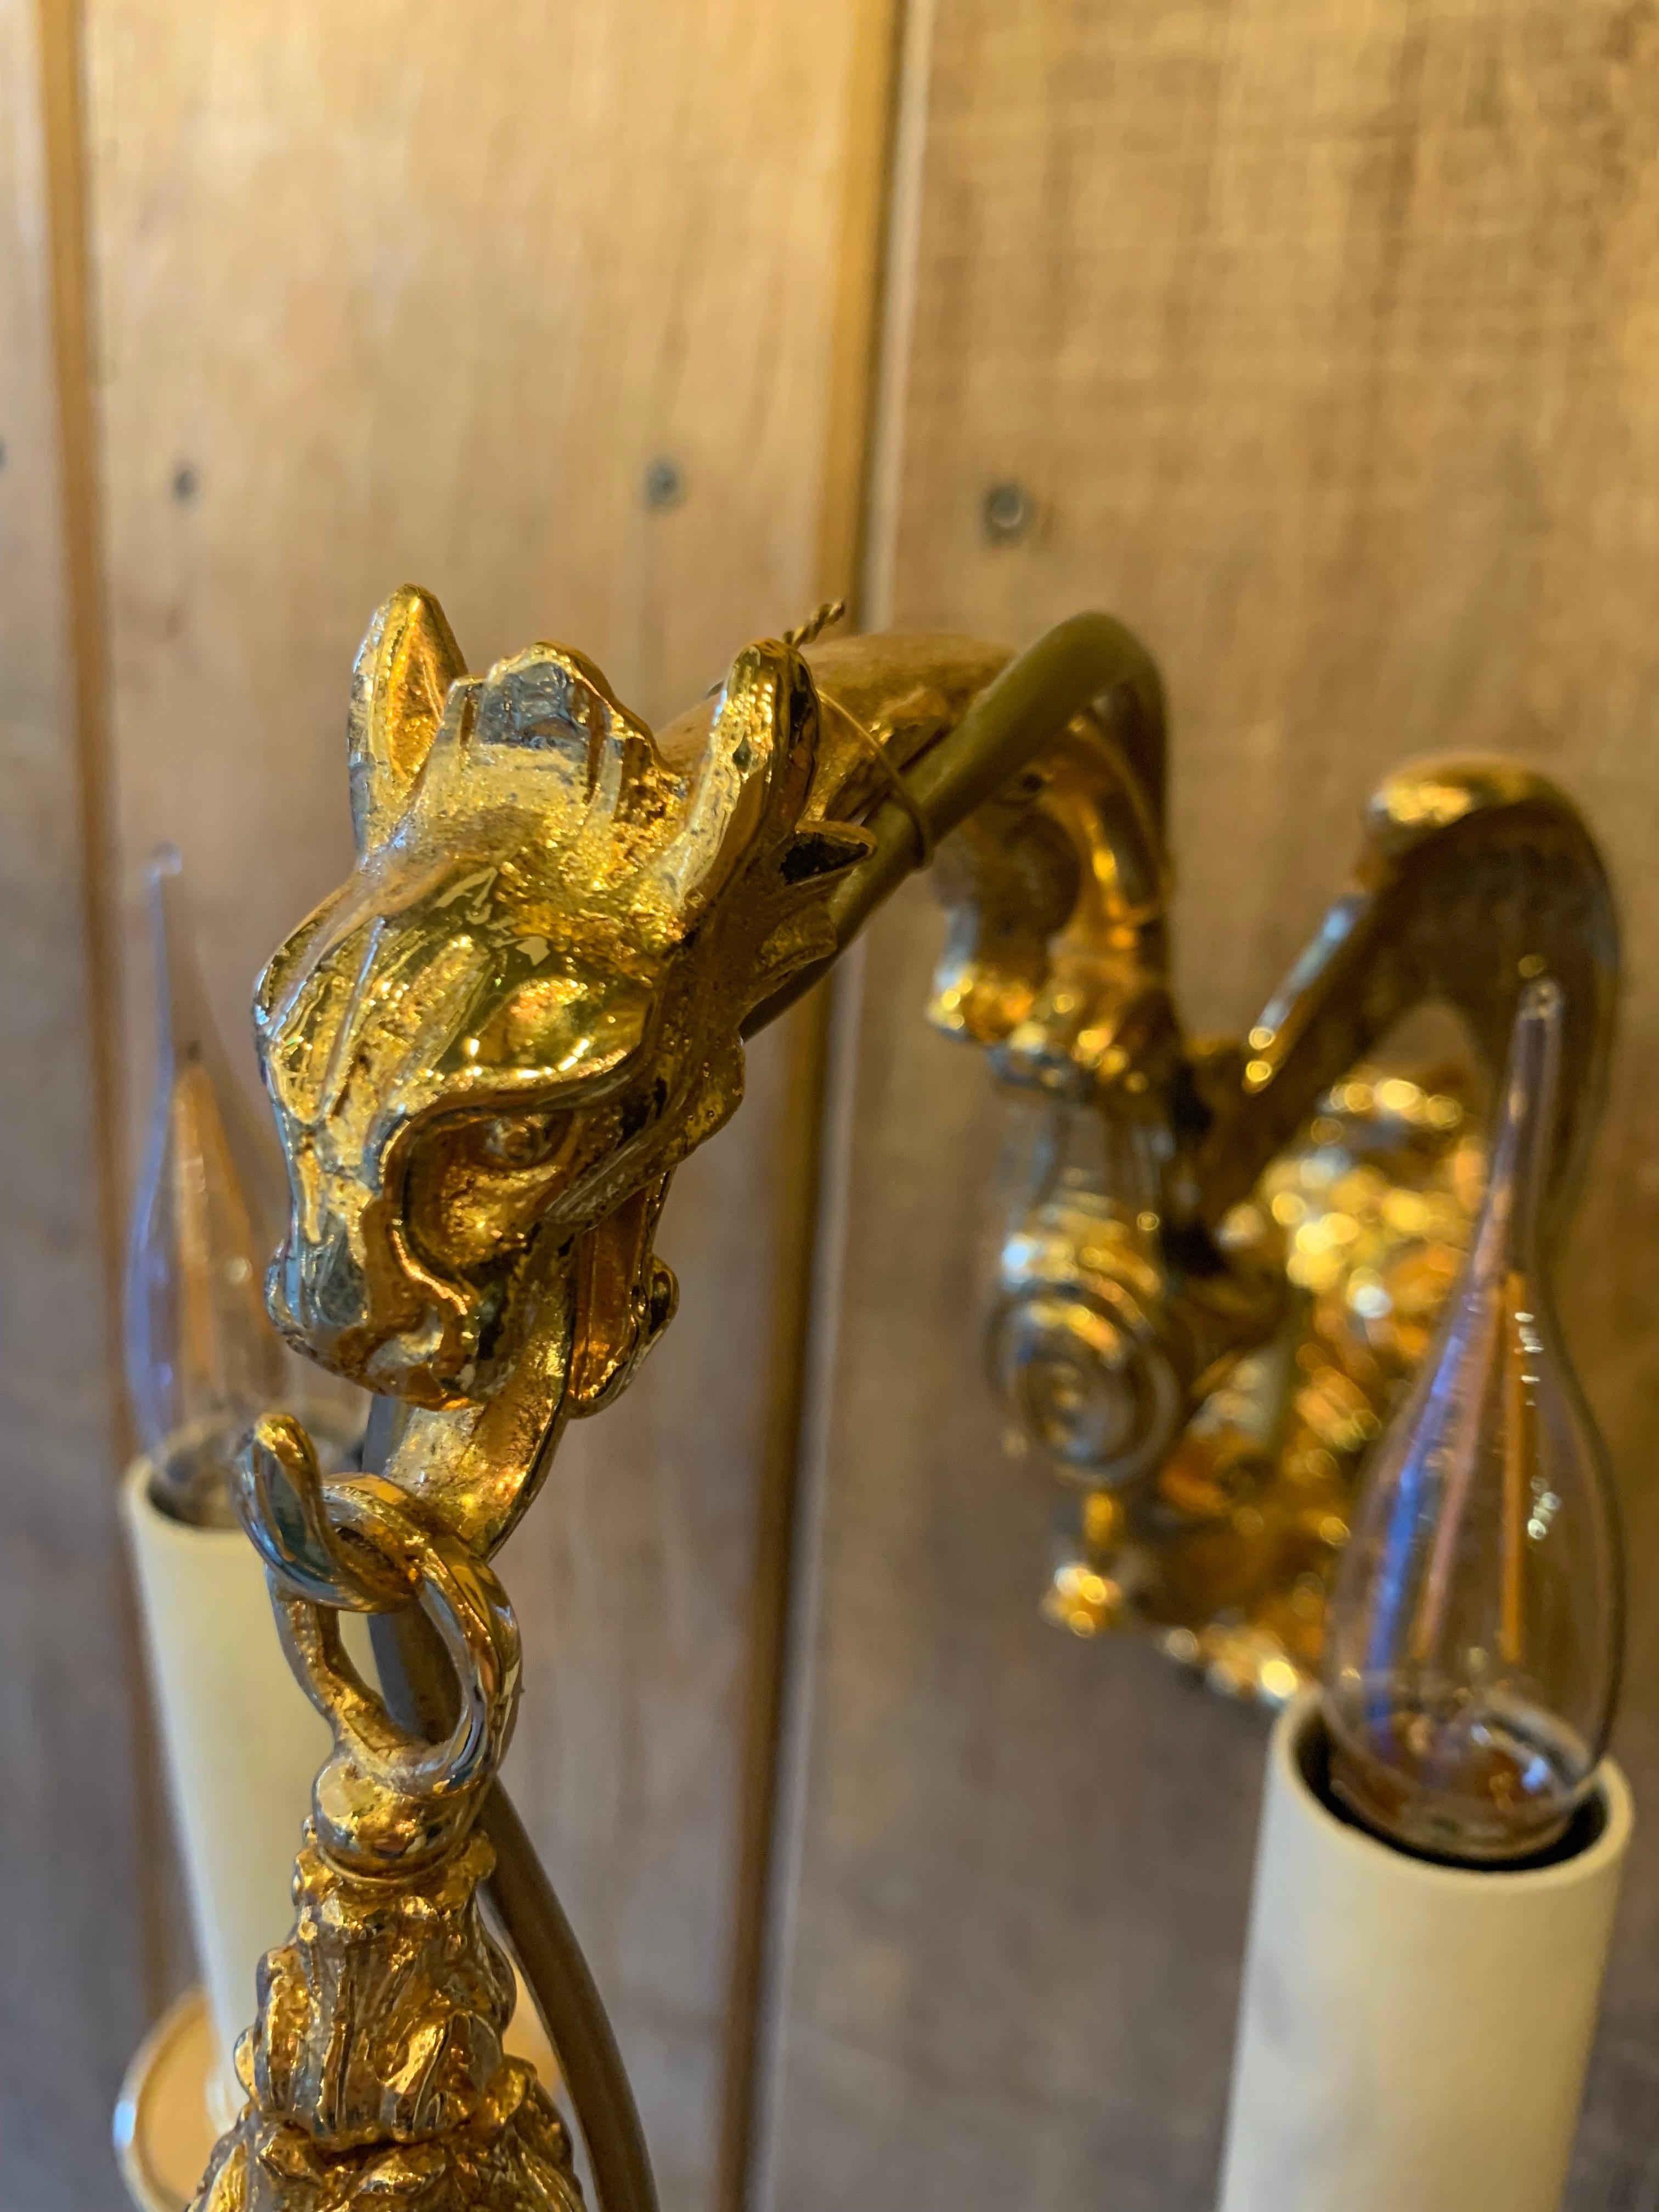 Kleiner Wandlampen-Drache aus 18k vergoldeter Bronze mit 5 Lichterarmen im Louis XV-Stil.

Wir haben ein Paar auf Lager, können sie aber auch nach Maß und in anderen Ausführungen wie antiker Bronze, 24-karätigem Gold, Silber, schwarzem Nickel (oder